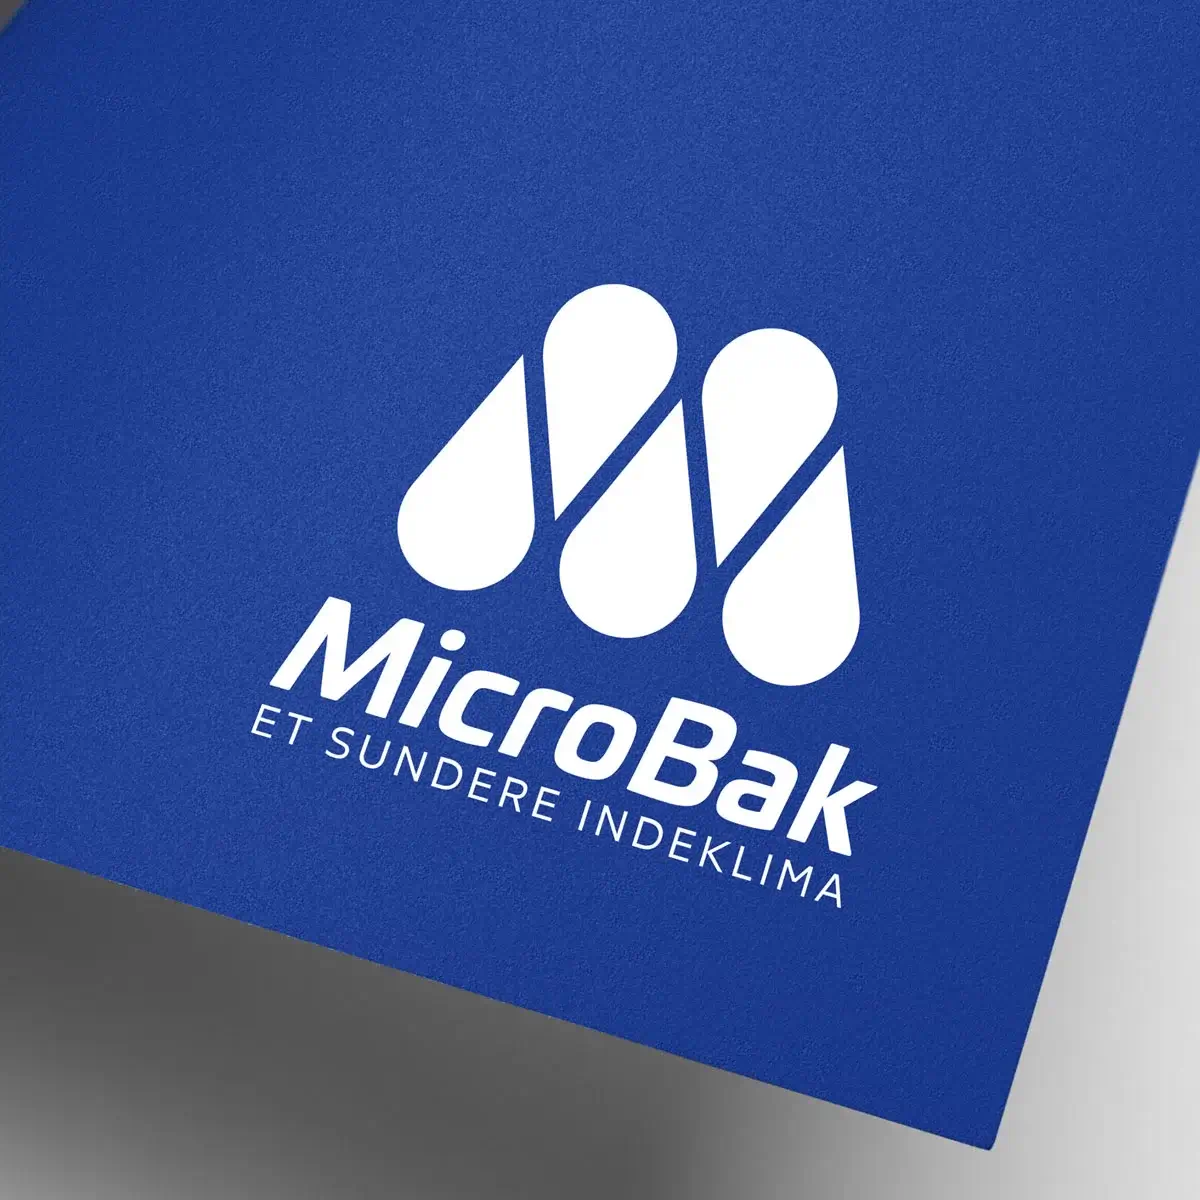 MicroBak case